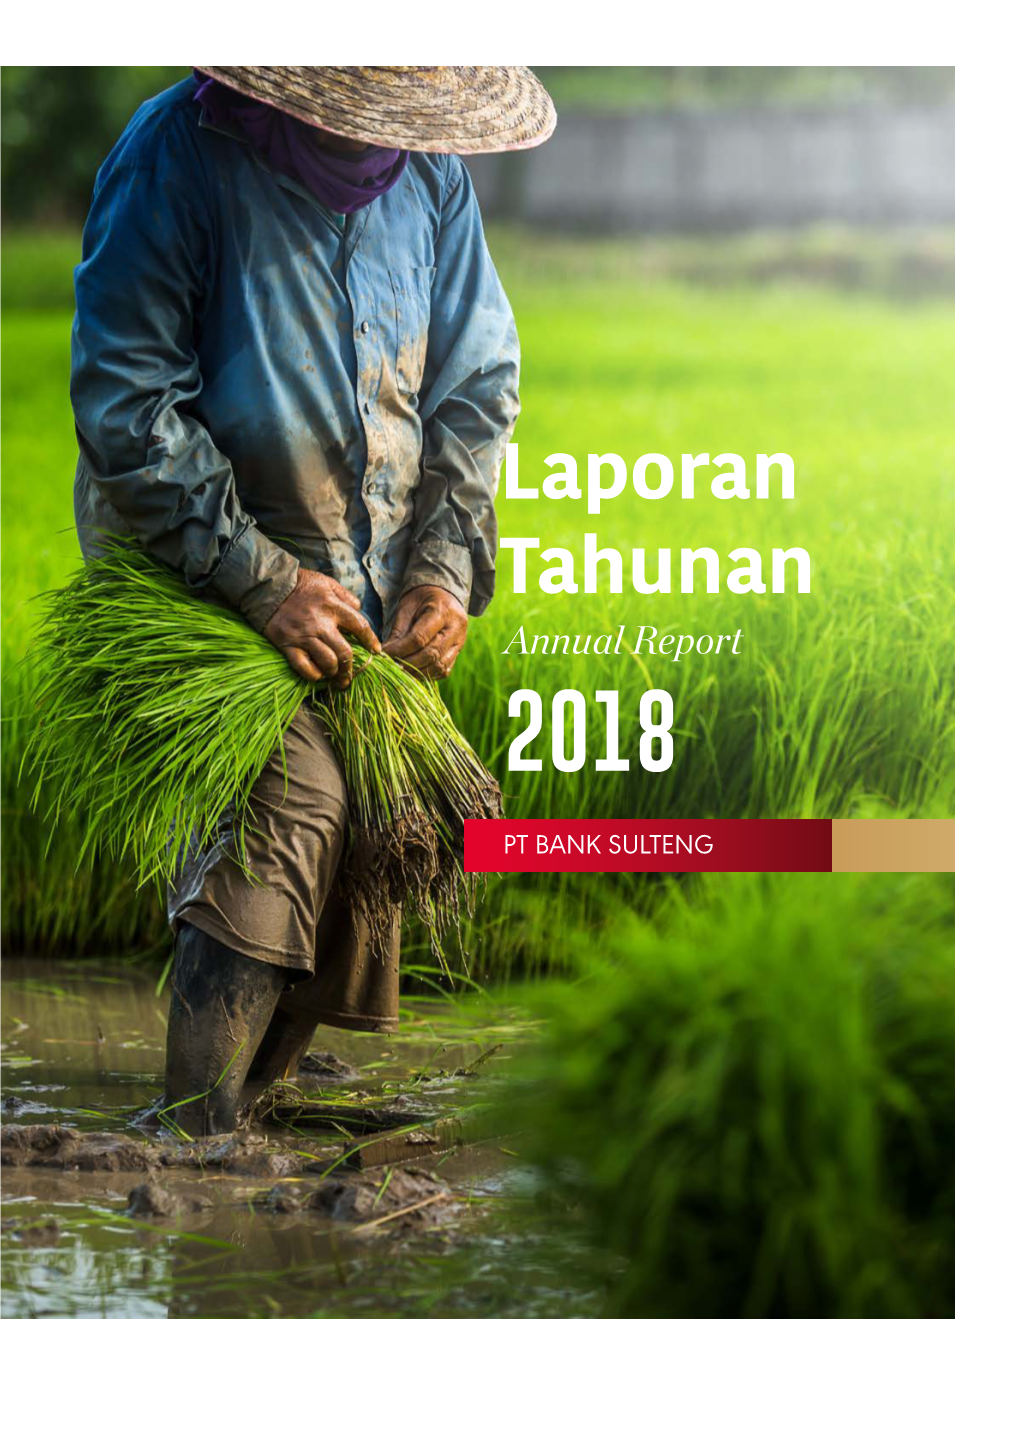 Laporan Tahunan Annual Report 2018